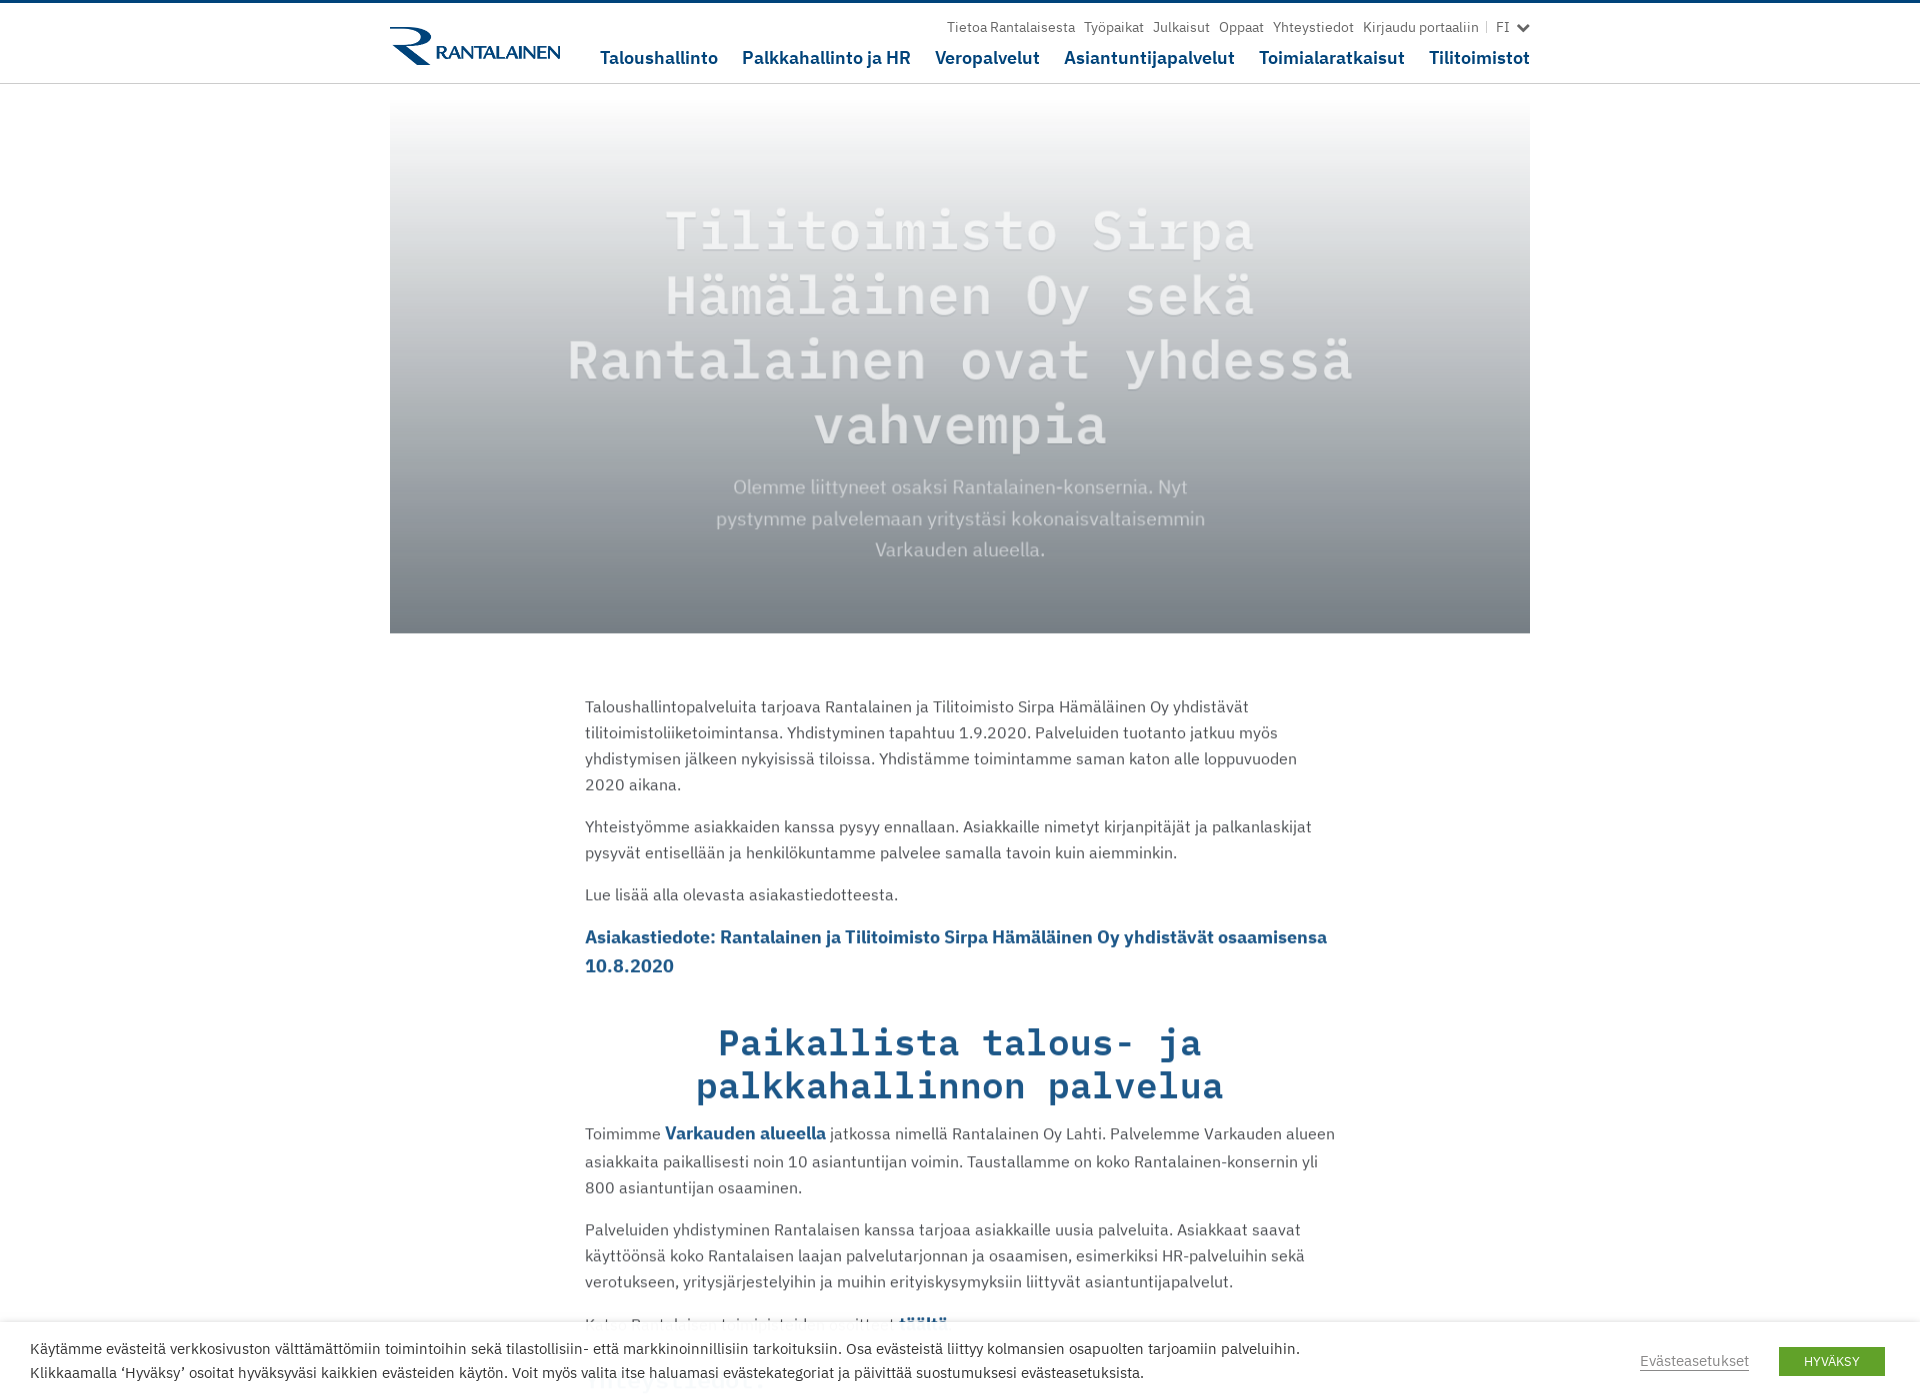 Skärmdump för tilitoimistosirpahamalainen.fi